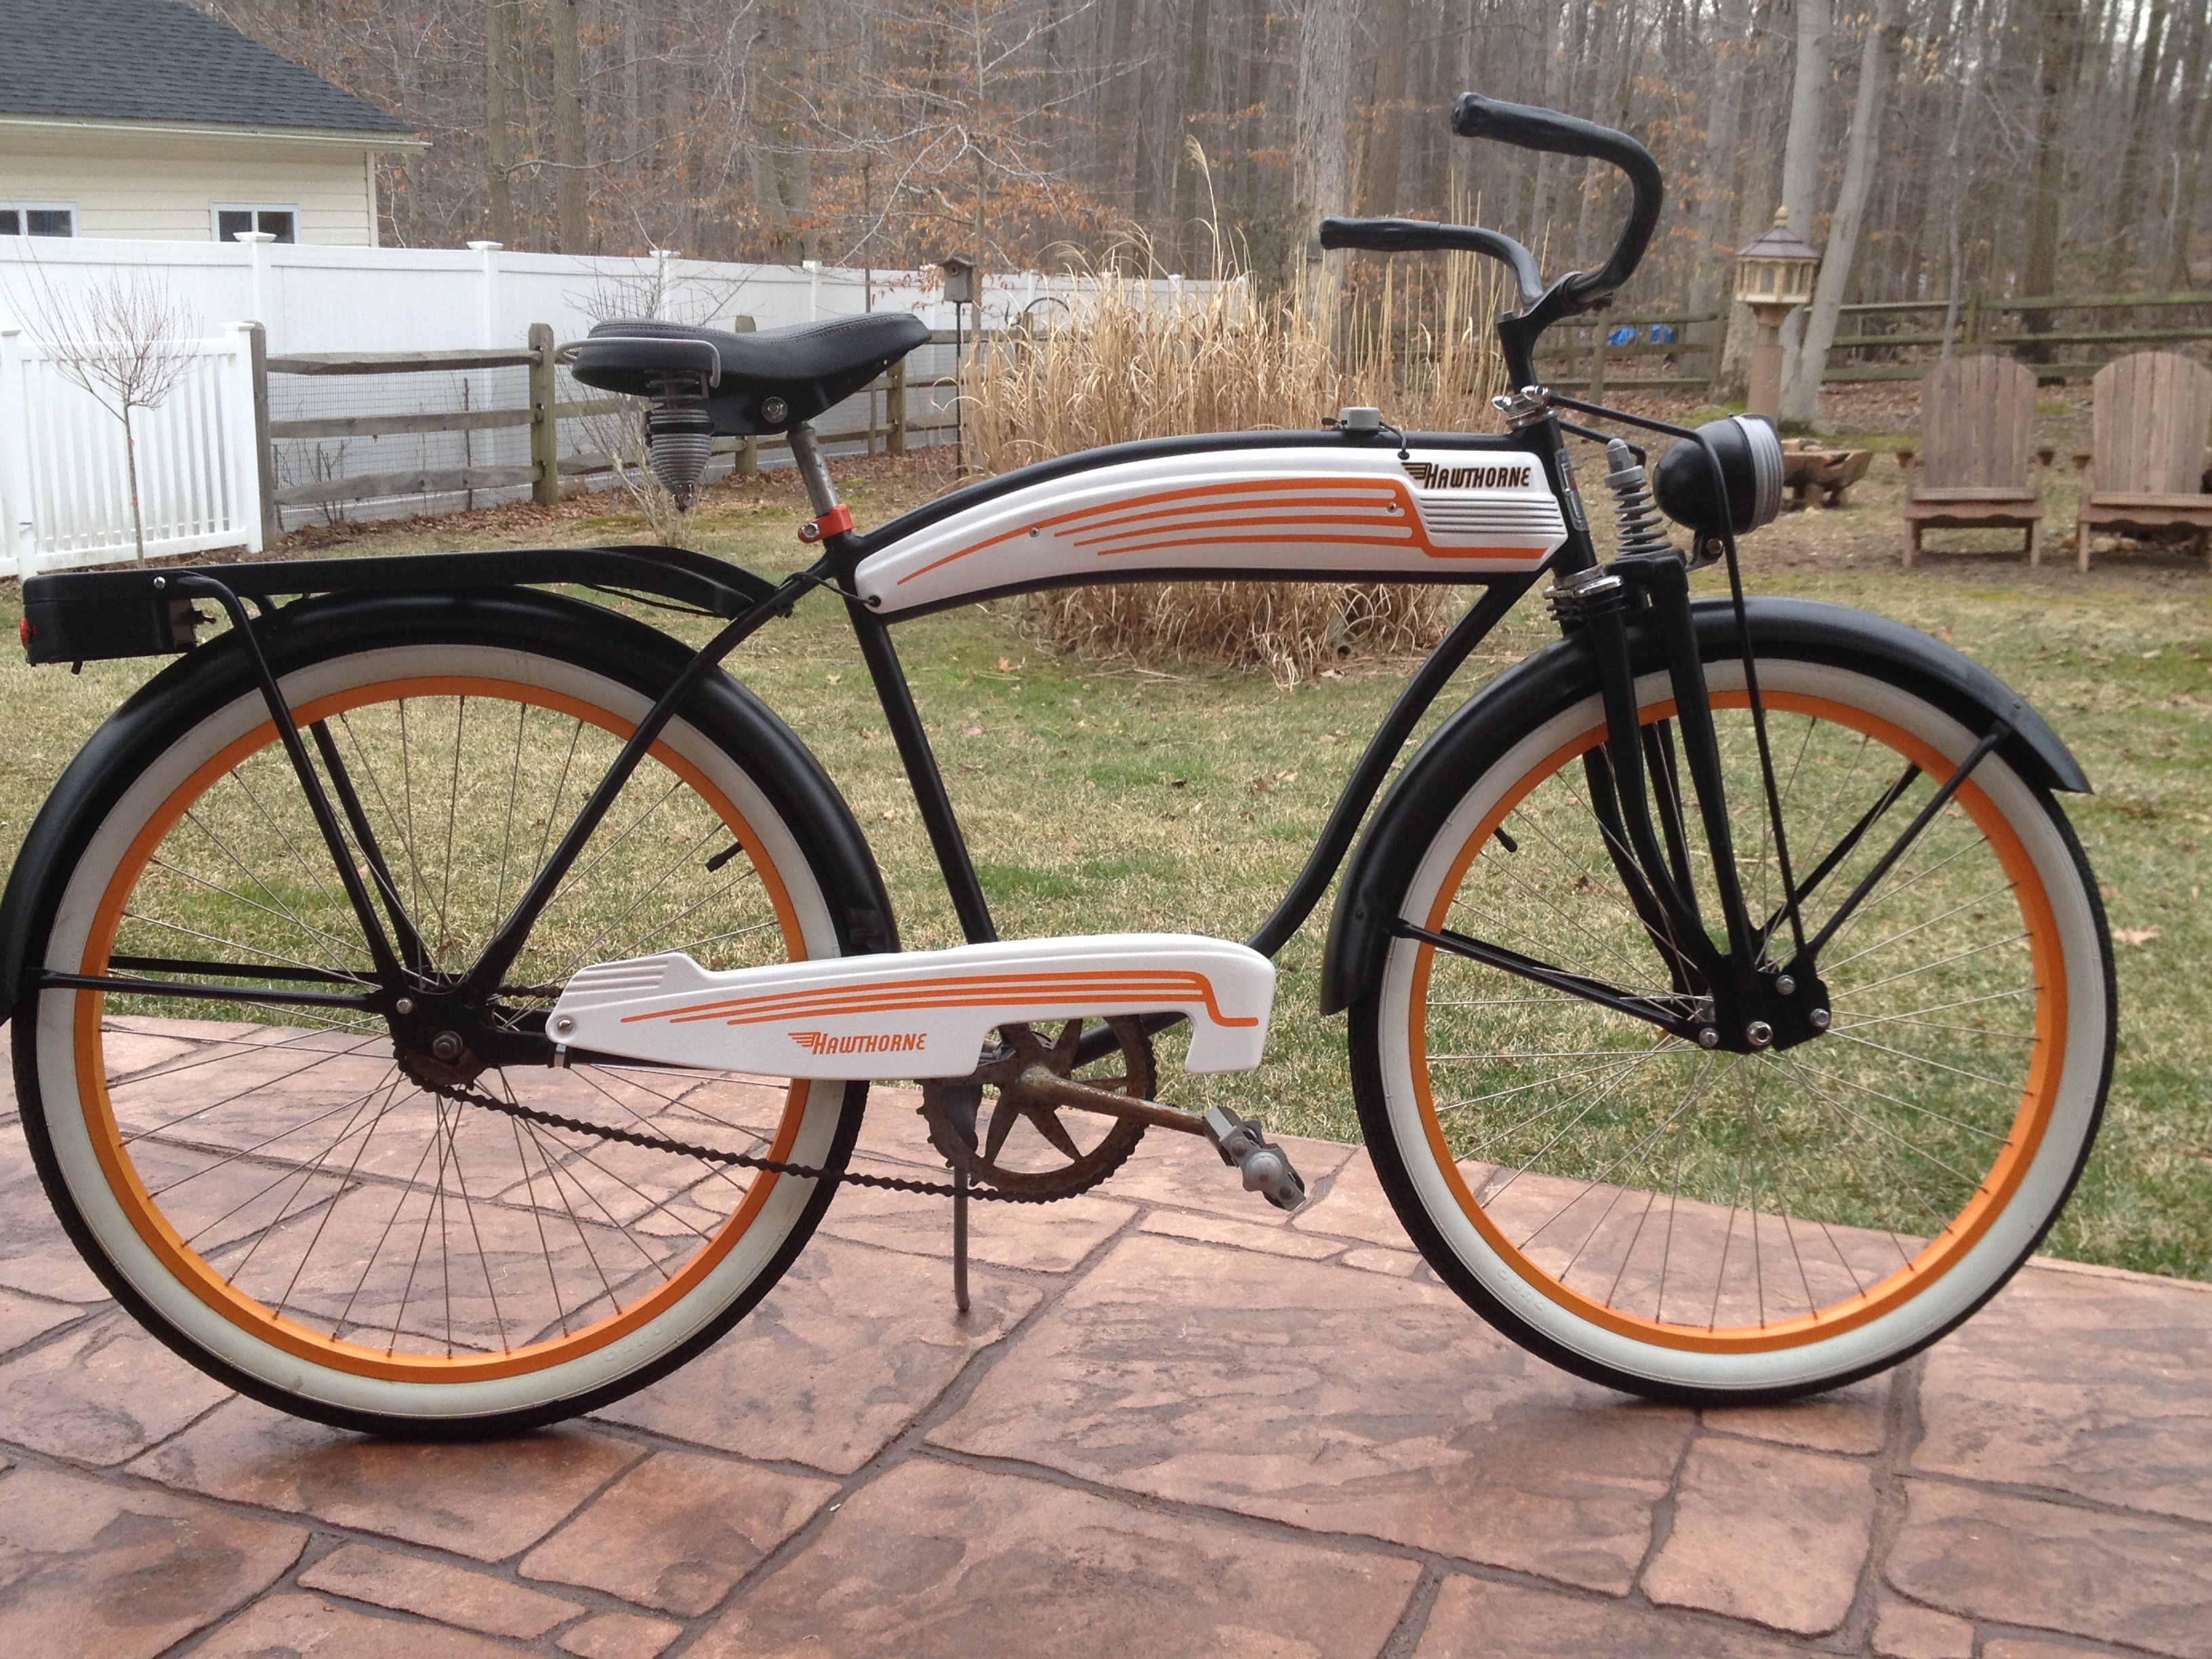 Vintage bicycle restoration